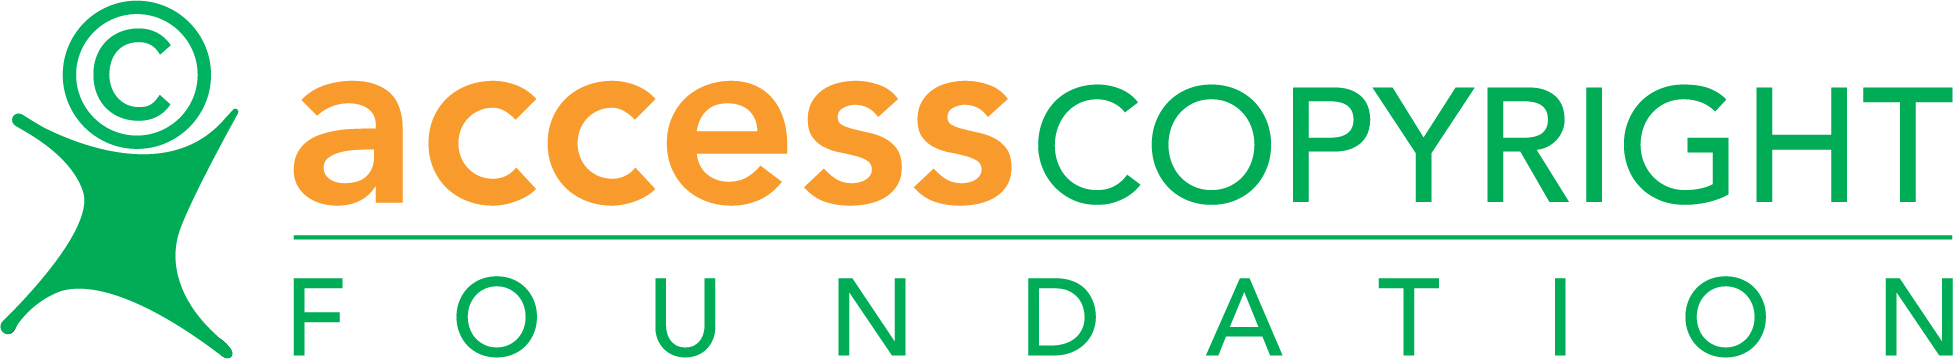 Access Copyright Foundation Logo - Colour